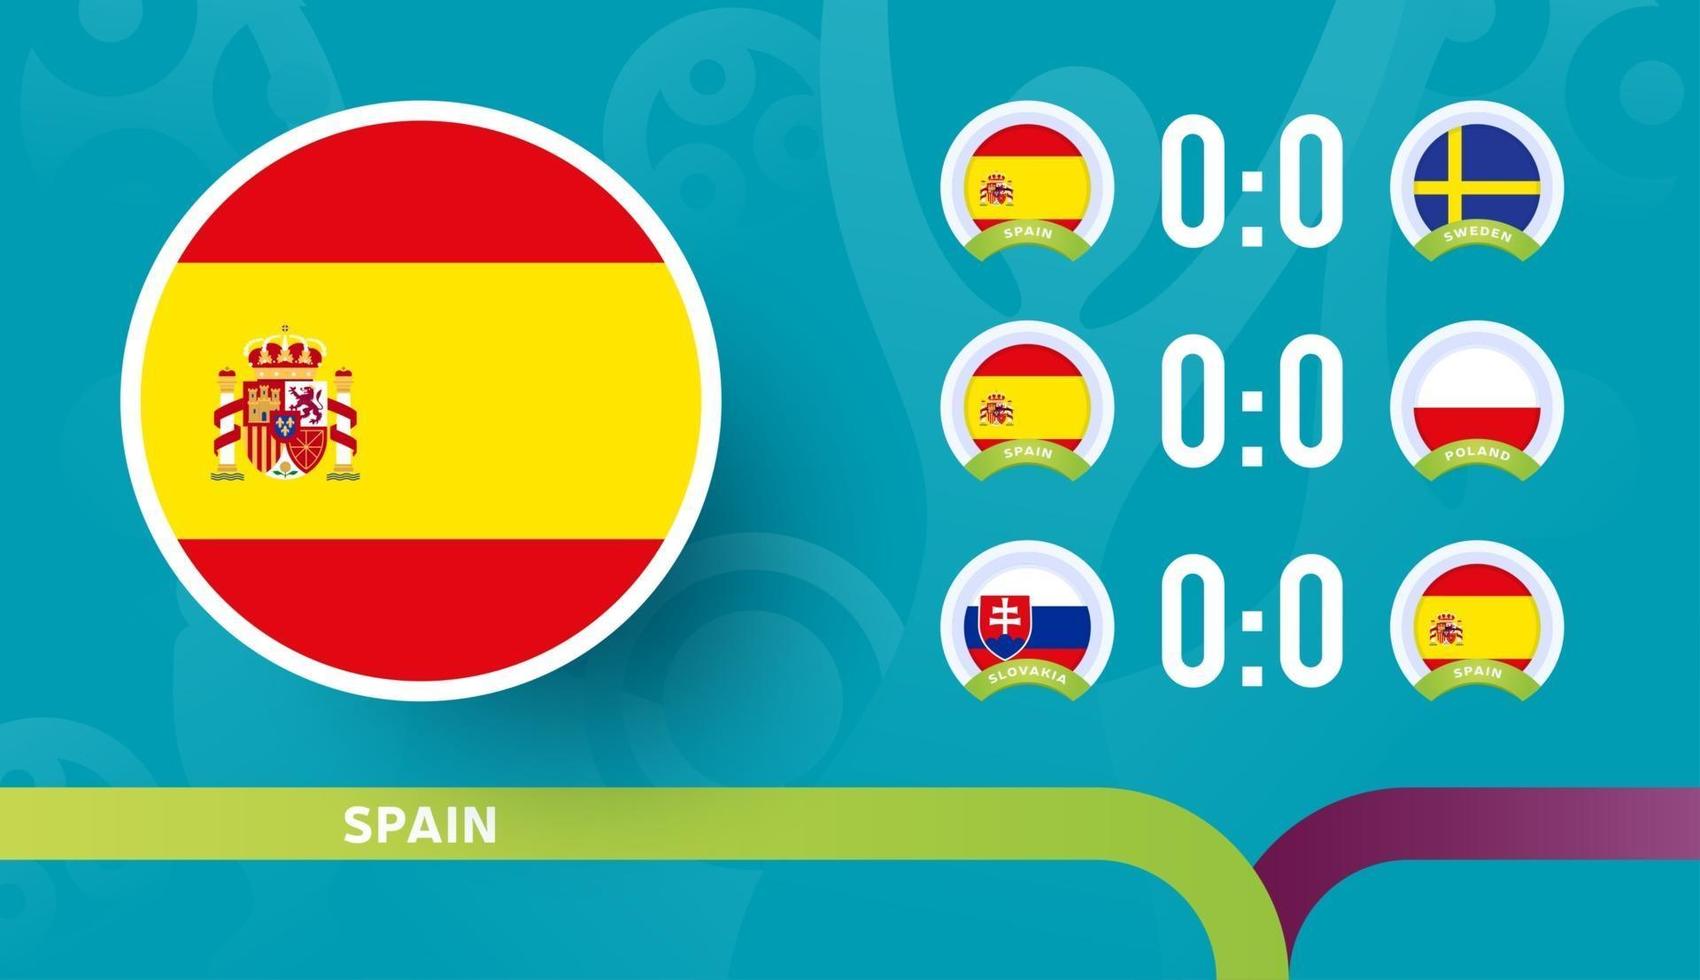 L'équipe nationale espagnole programme les matchs de la phase finale du championnat de football 2020. illustration vectorielle de matchs de football 2020 vecteur